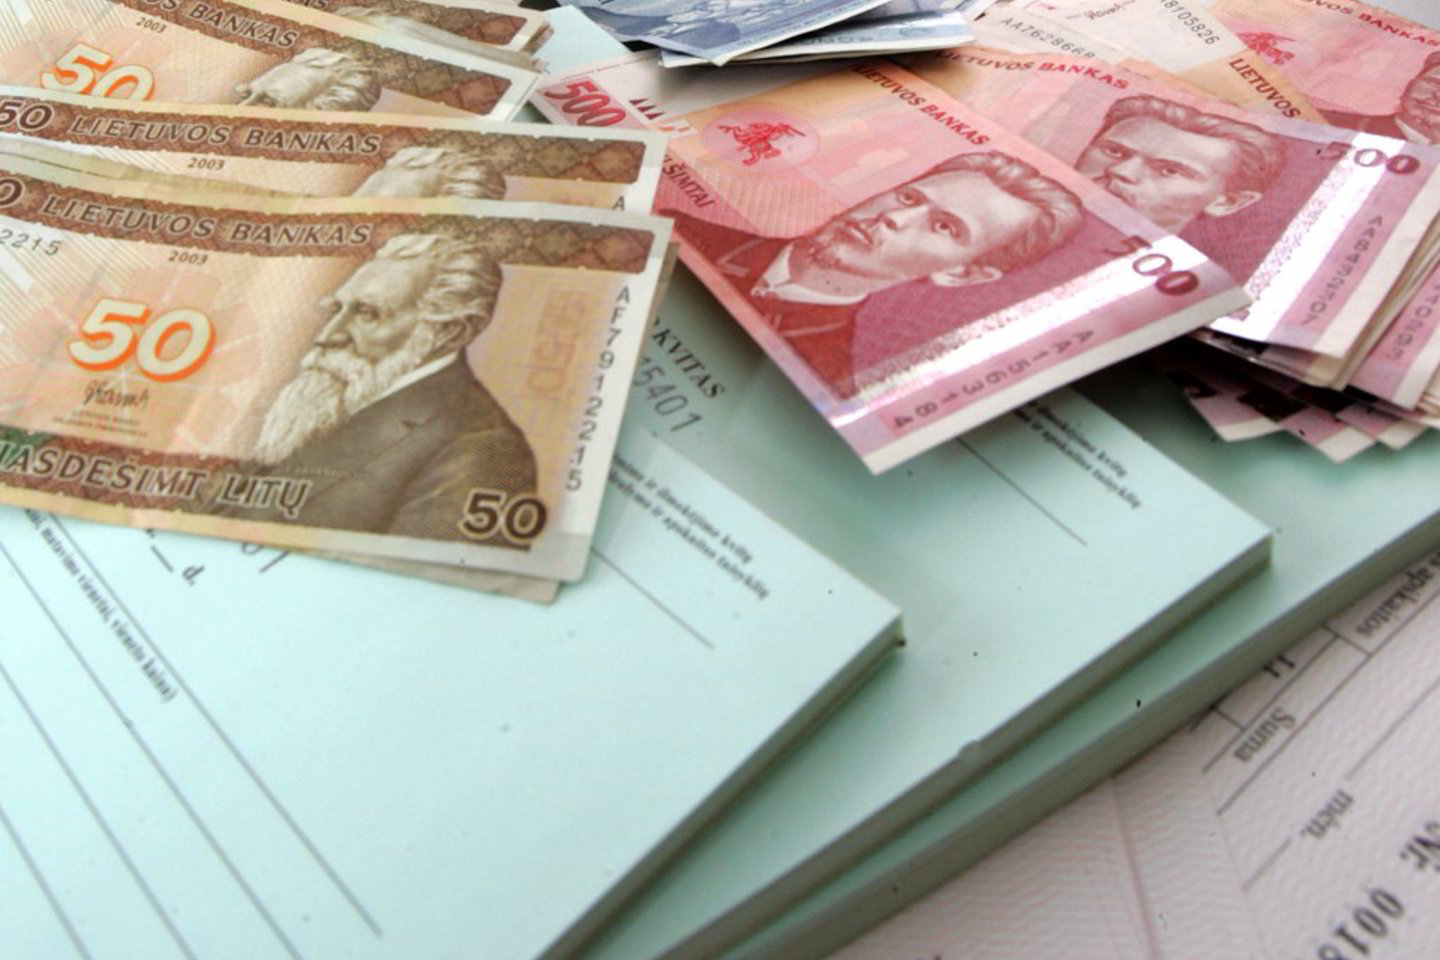 Vyriausybė vertybinių popierių (VVP) aukcione 9 mėnesiams pasiskolino 90 mln. Lt.<br>V. Balkūno asociatyvi nuotr.